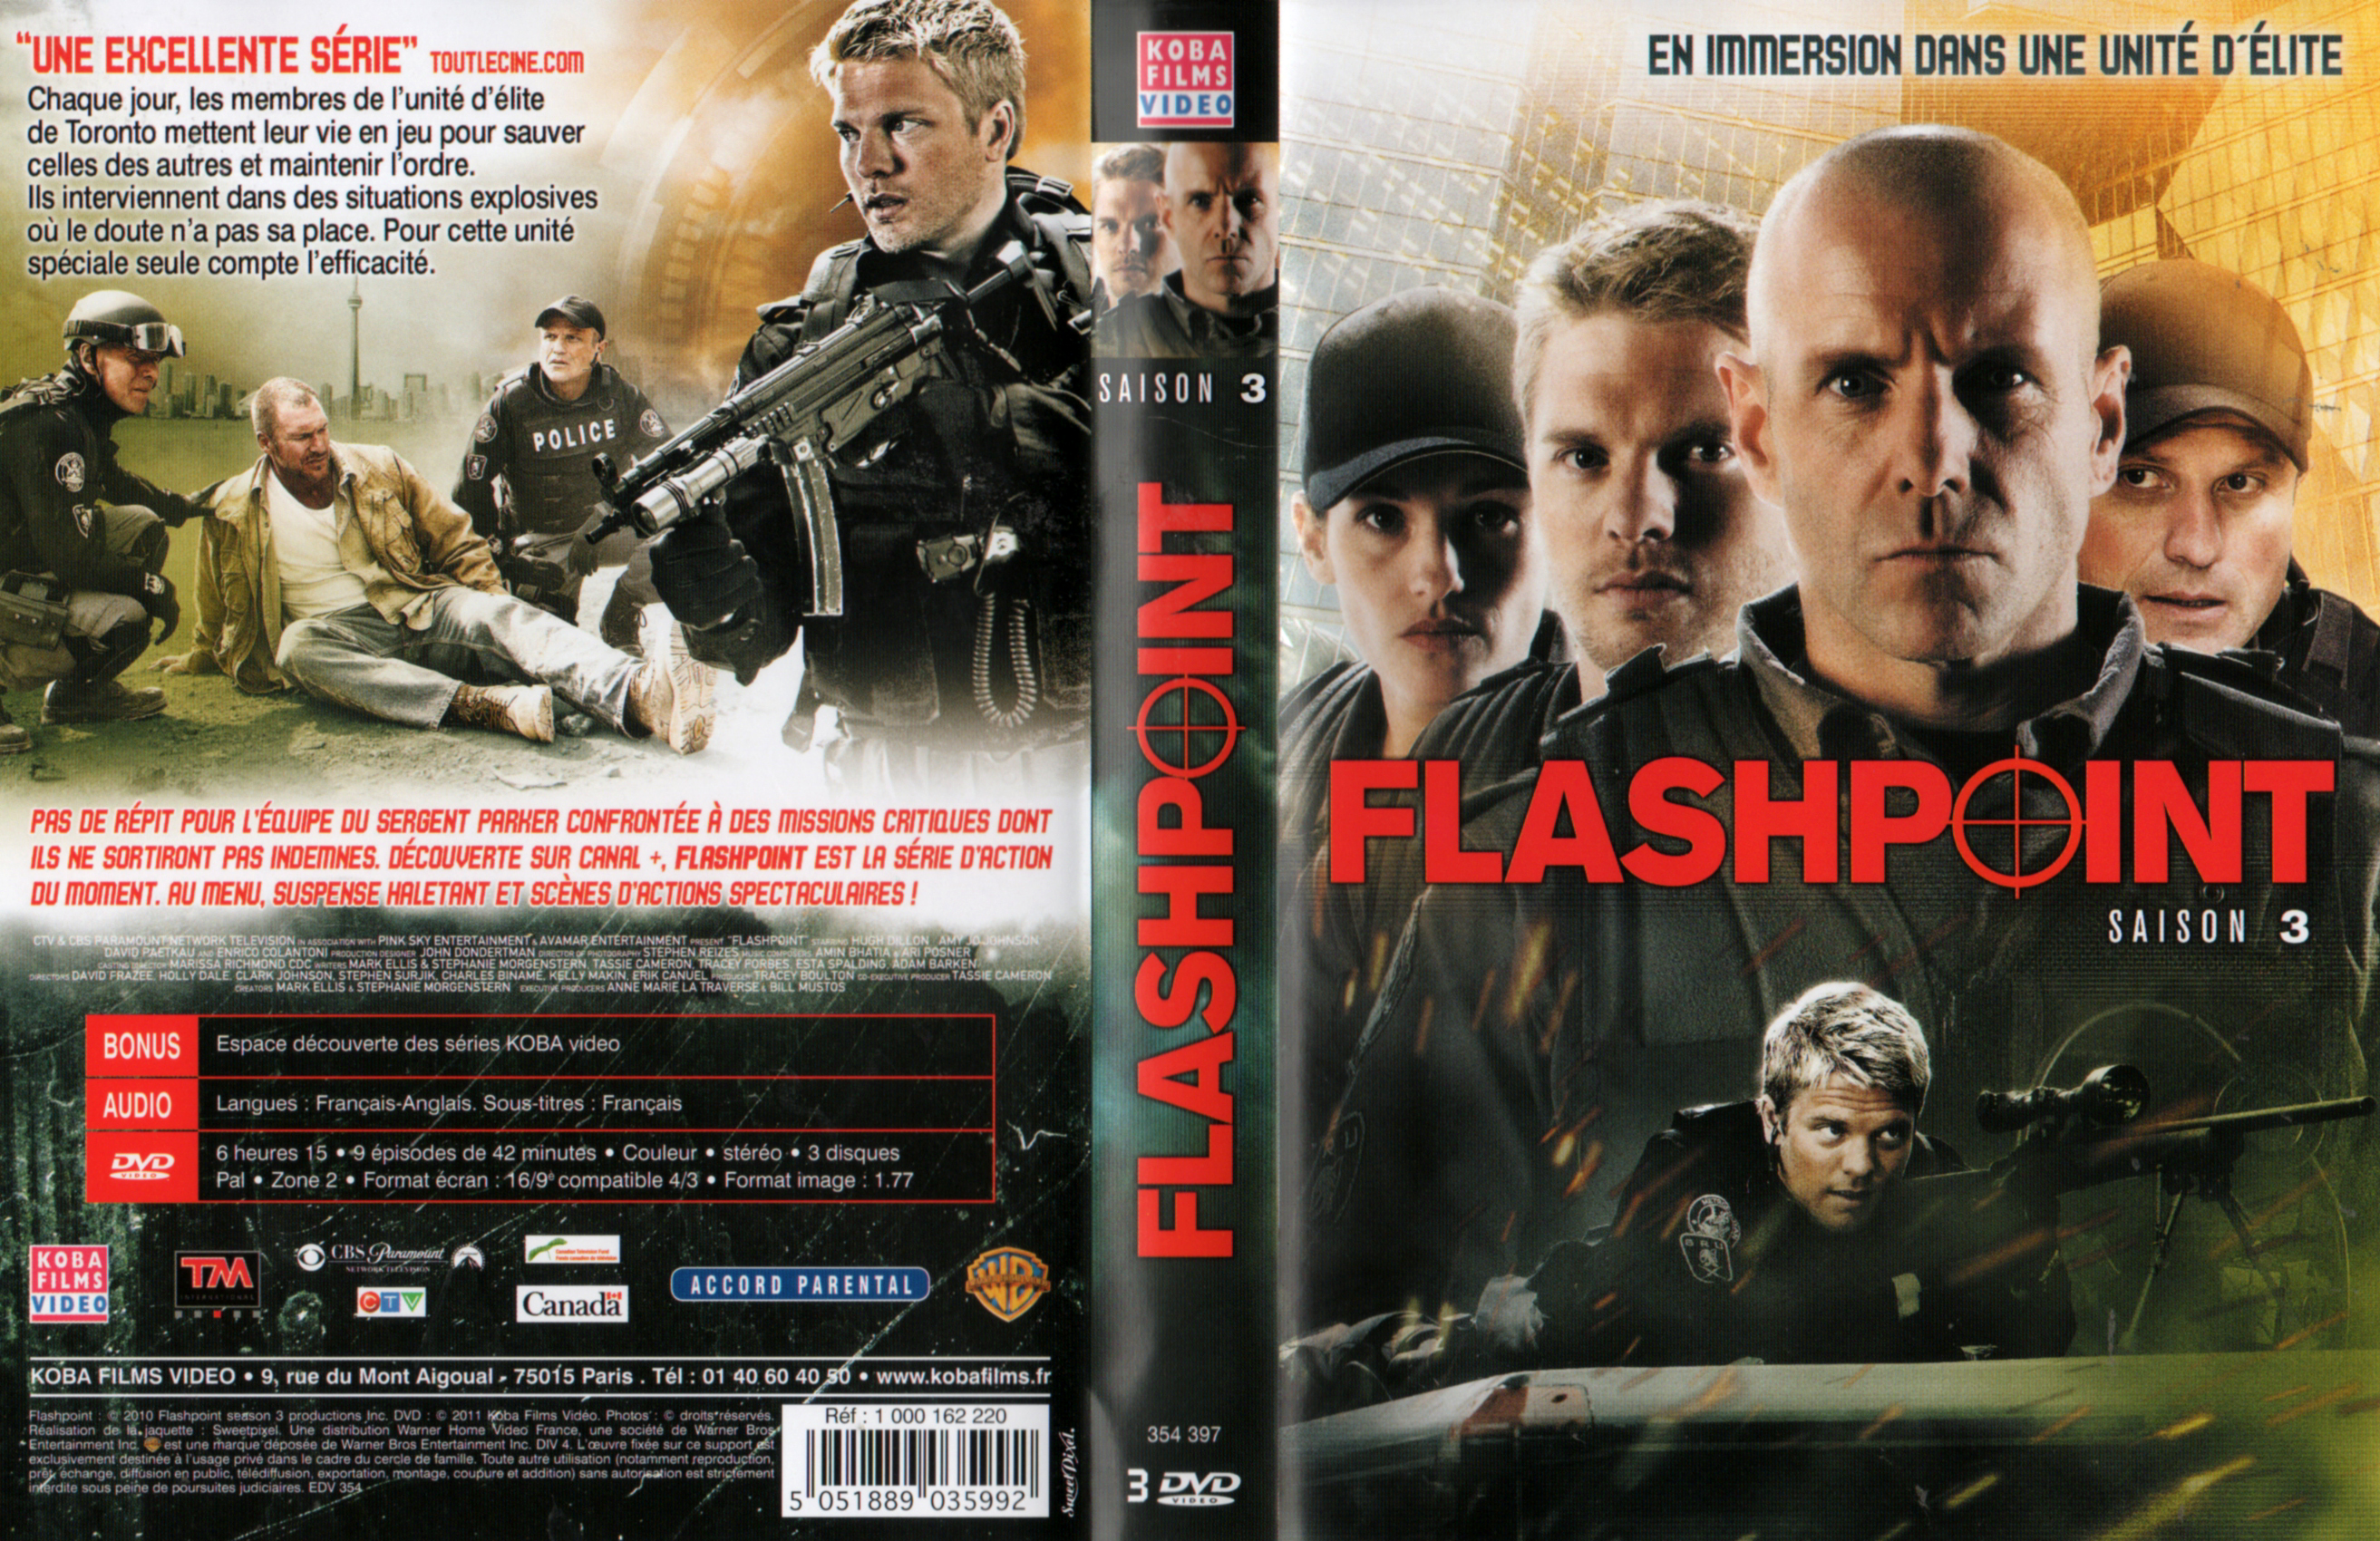 Jaquette DVD Flashpoint Saison 3 COFFRET